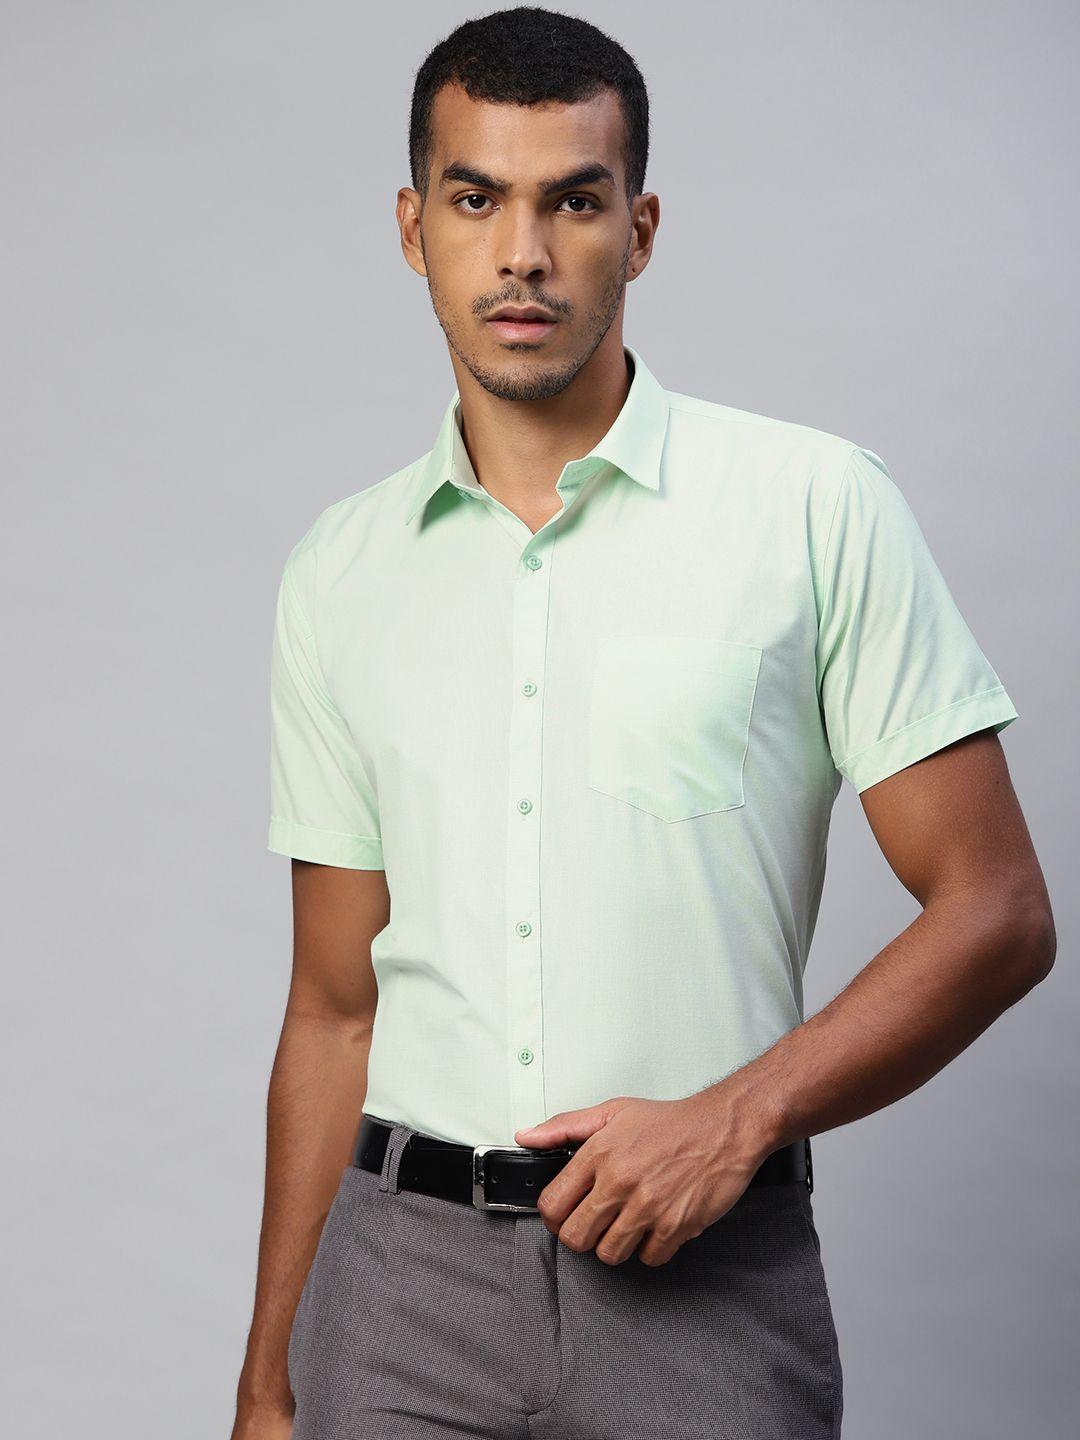 manq men sea green solid spread collar formal shirt